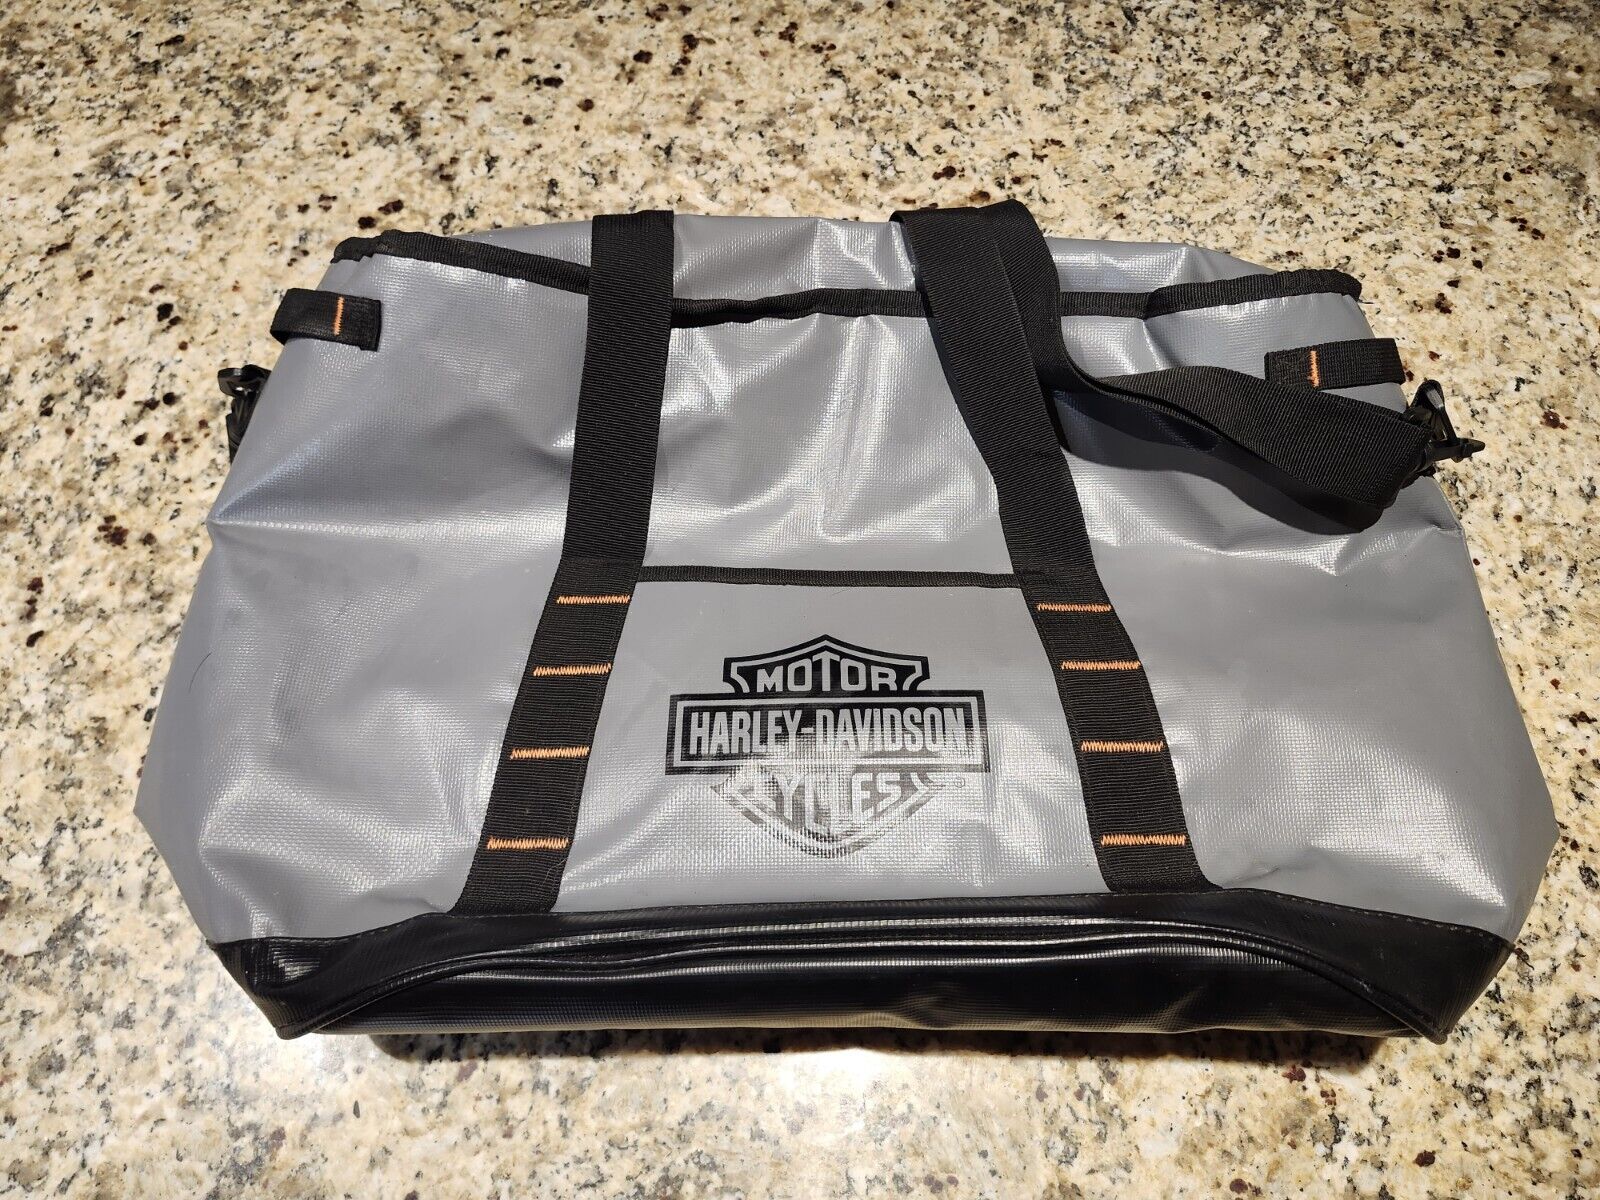 Harley Davidson Soft Sided Insulated Cooler Bag, Gray/Black/Orange, 22”x14”